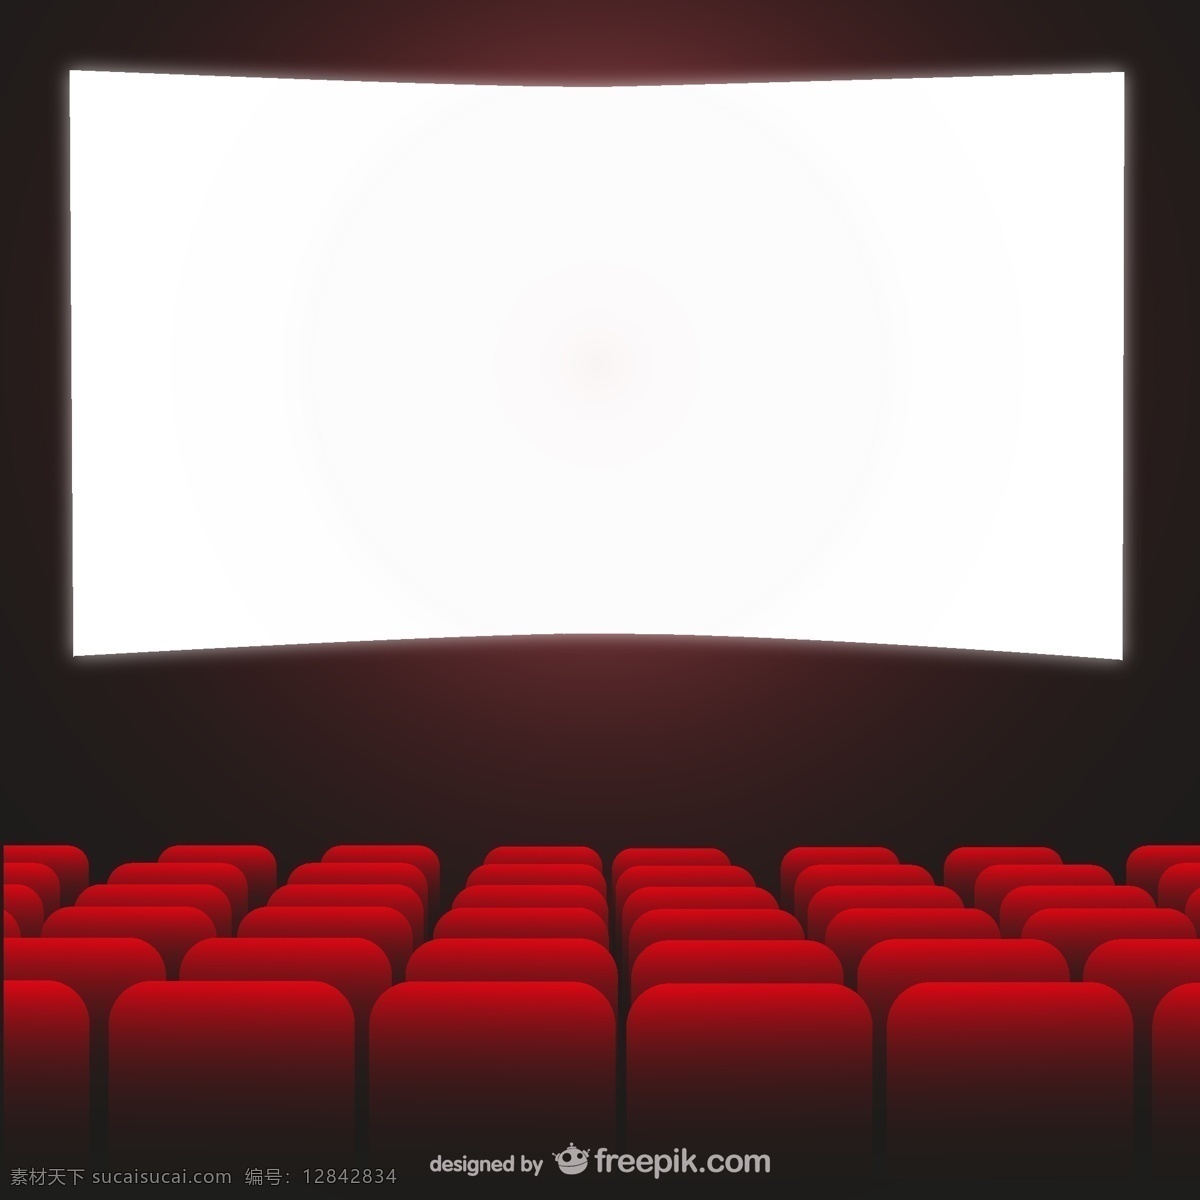 创意 放映厅 背景 创意背景 电影院 屏幕 幕布 座椅 观众席 创意背景设计 白色